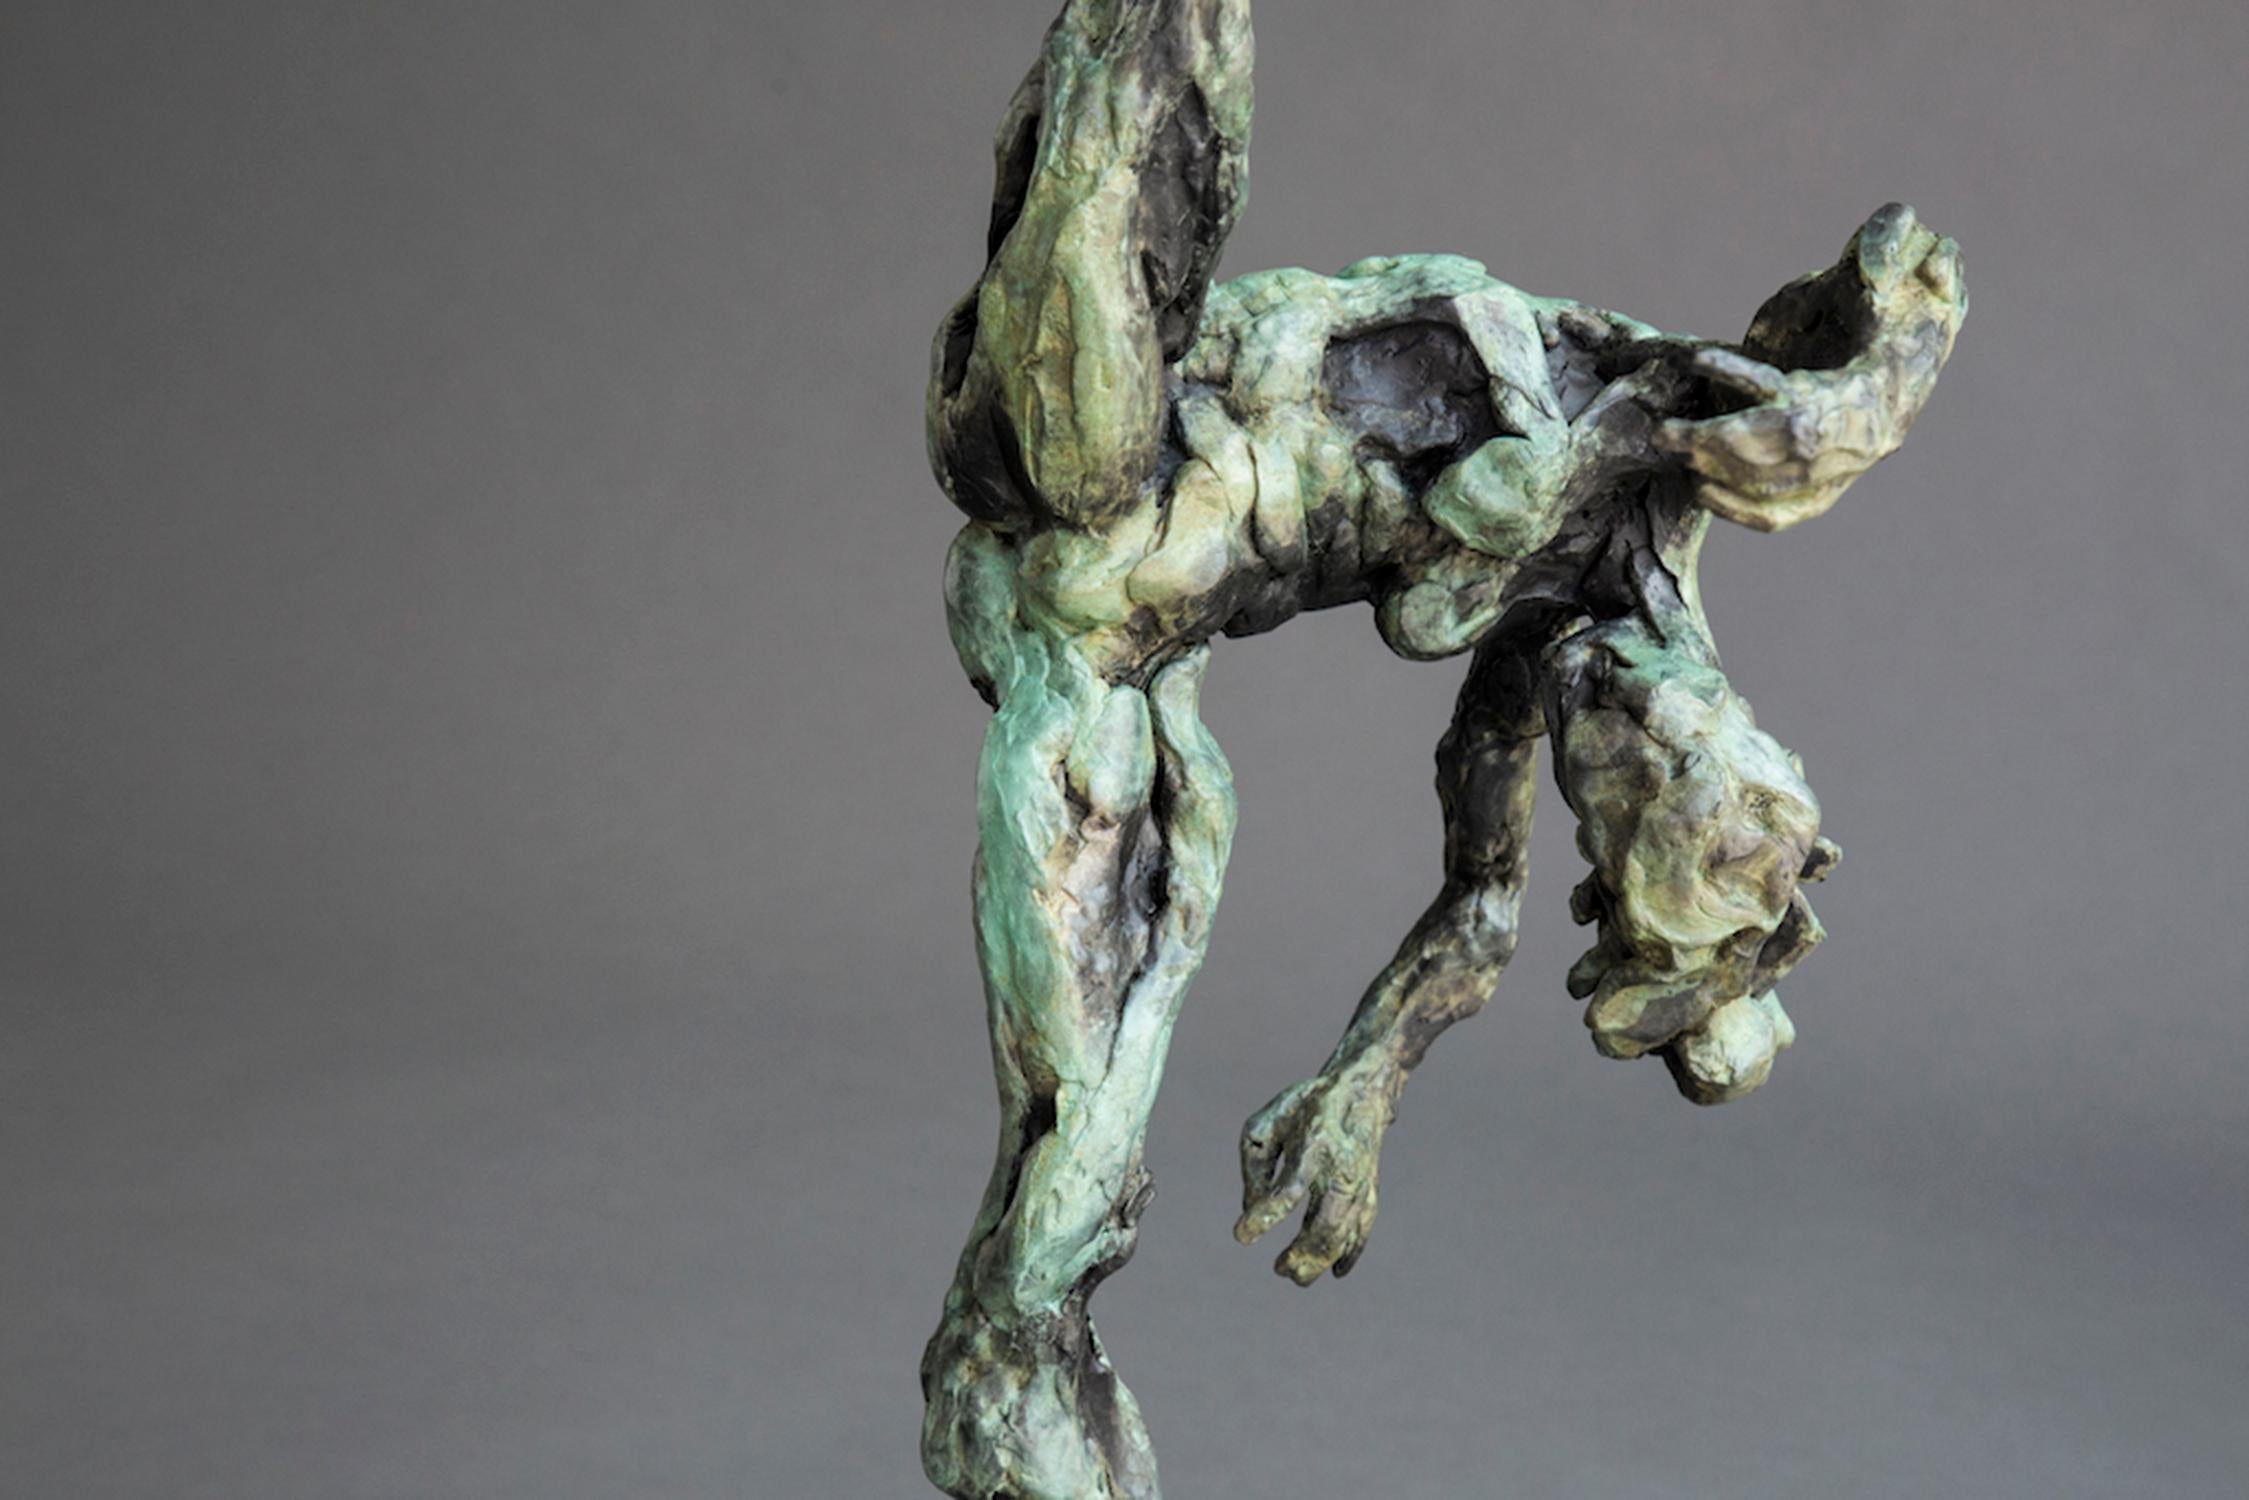 Femme danseuse nue - Sans titre n° 51 1/8 - statuette en bronze patiné représentant une femme nue - Or Figurative Sculpture par Richard Tosczak